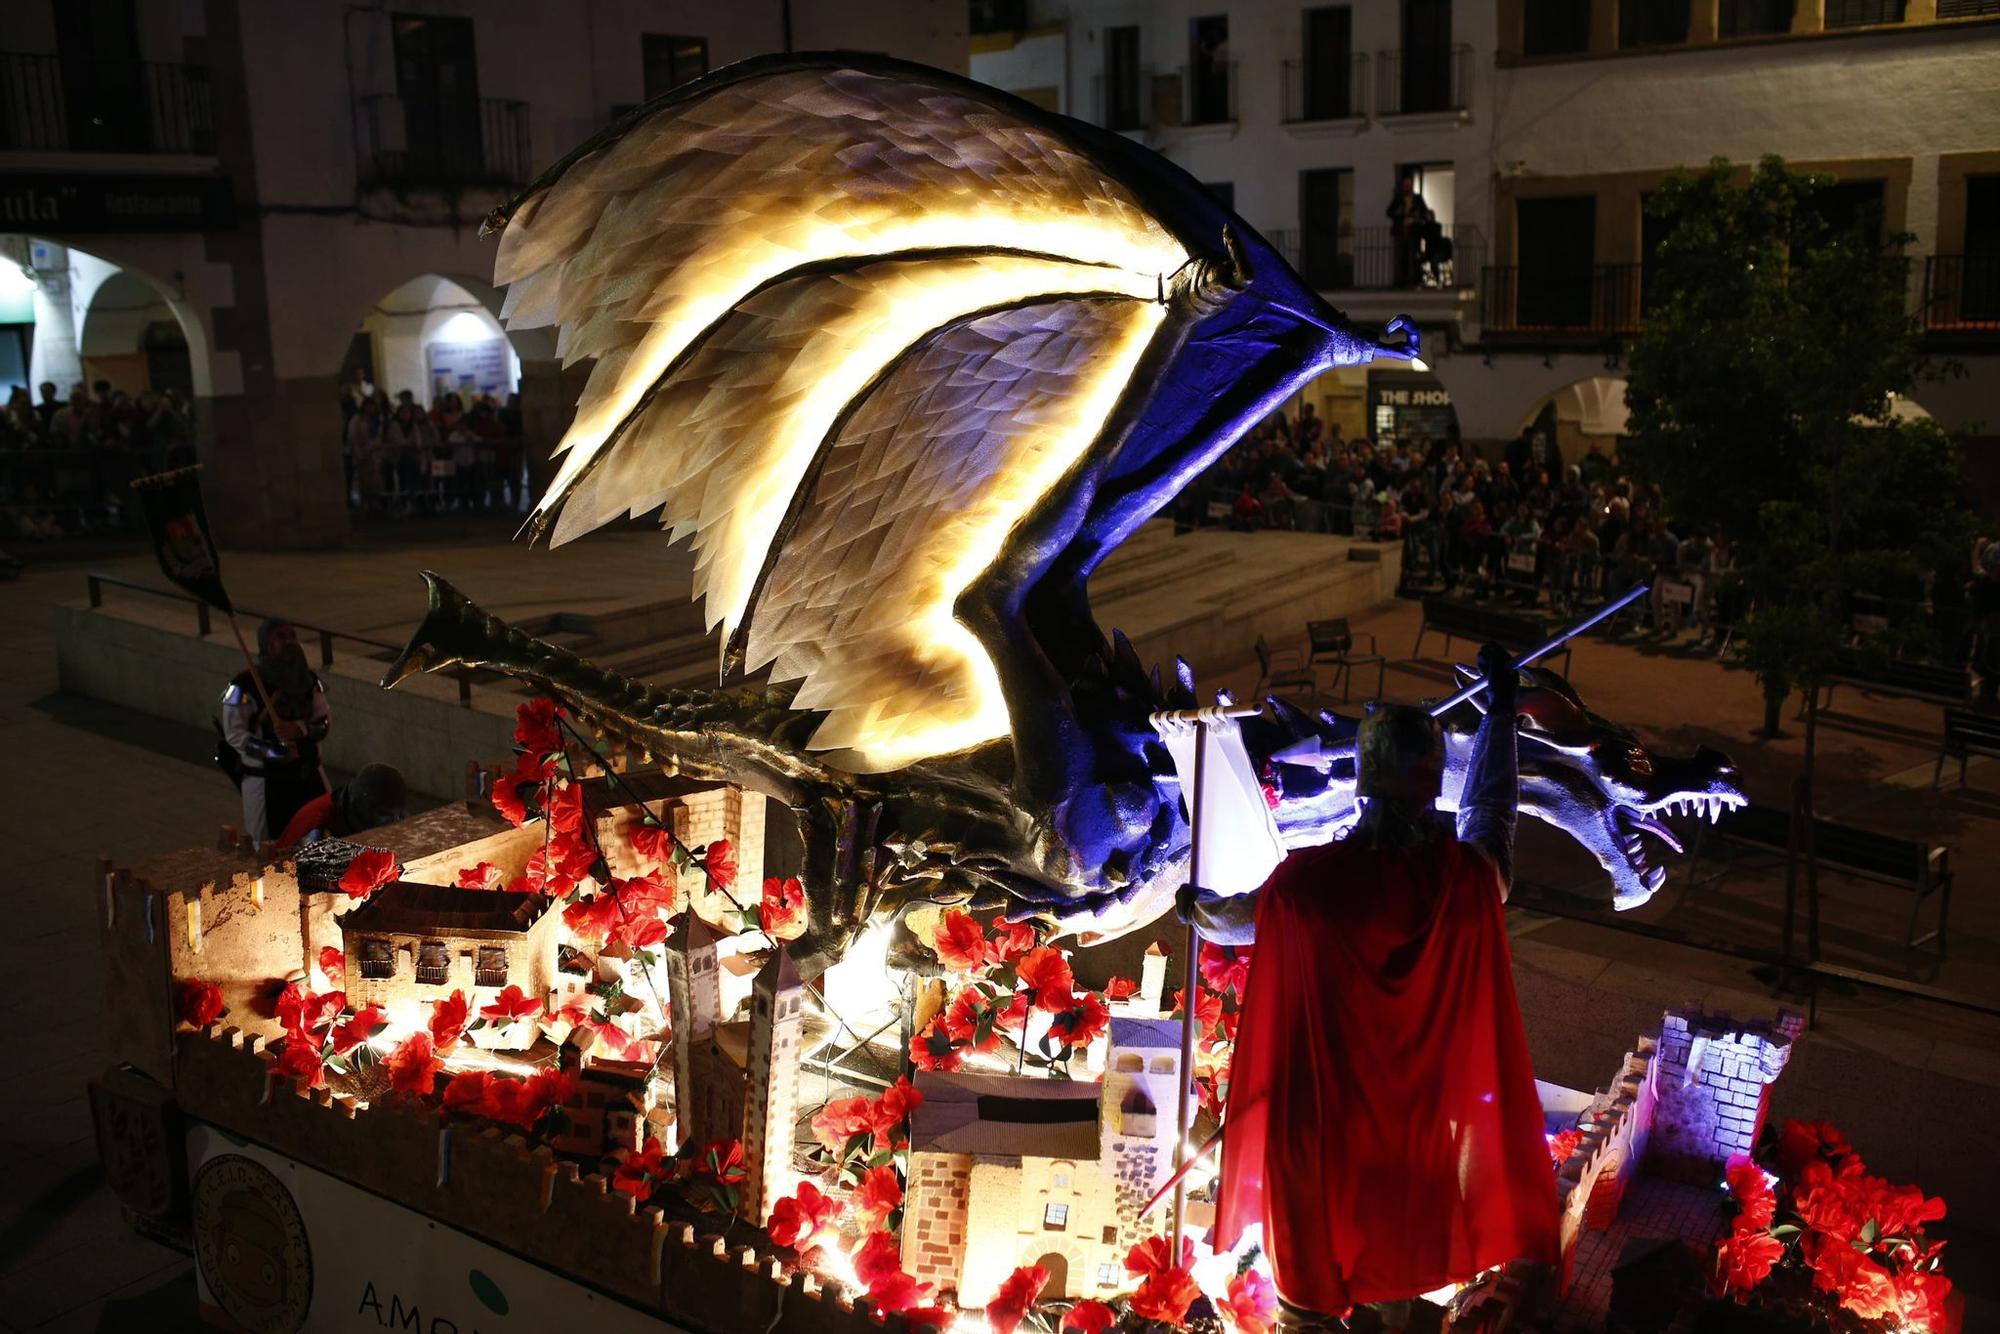 Galería | Así ha sido el desfile de San Jorge en Cáceres